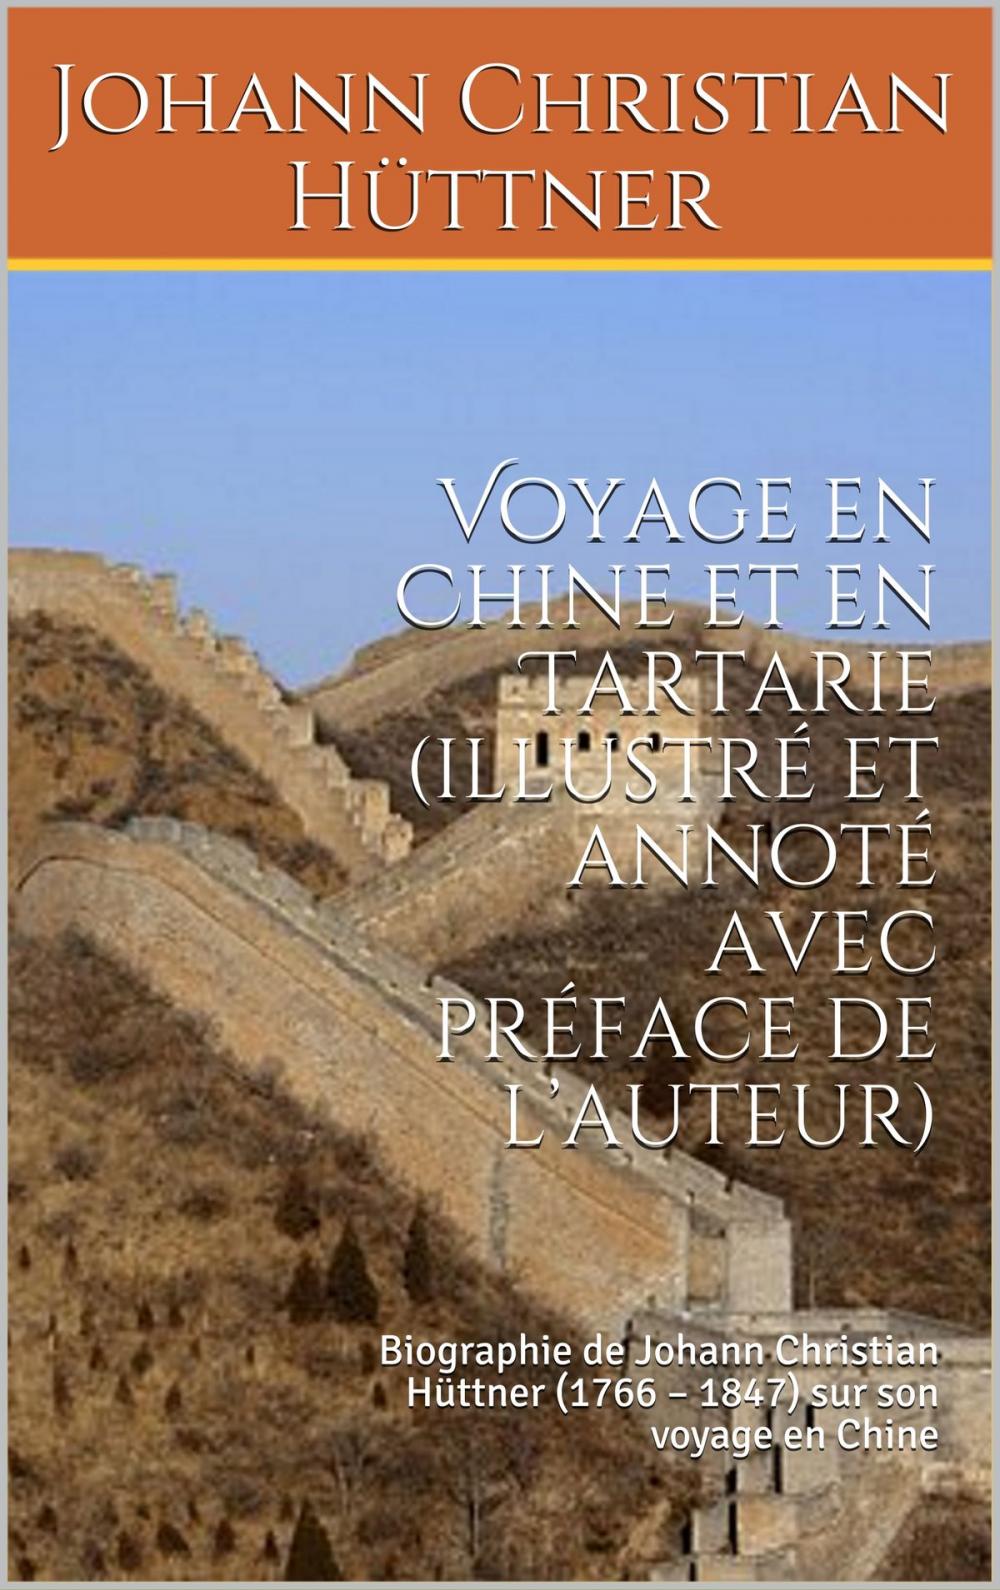 Big bigCover of Voyage en Chine et en Tartarie (illustré et annoté avec préface de l’auteur)